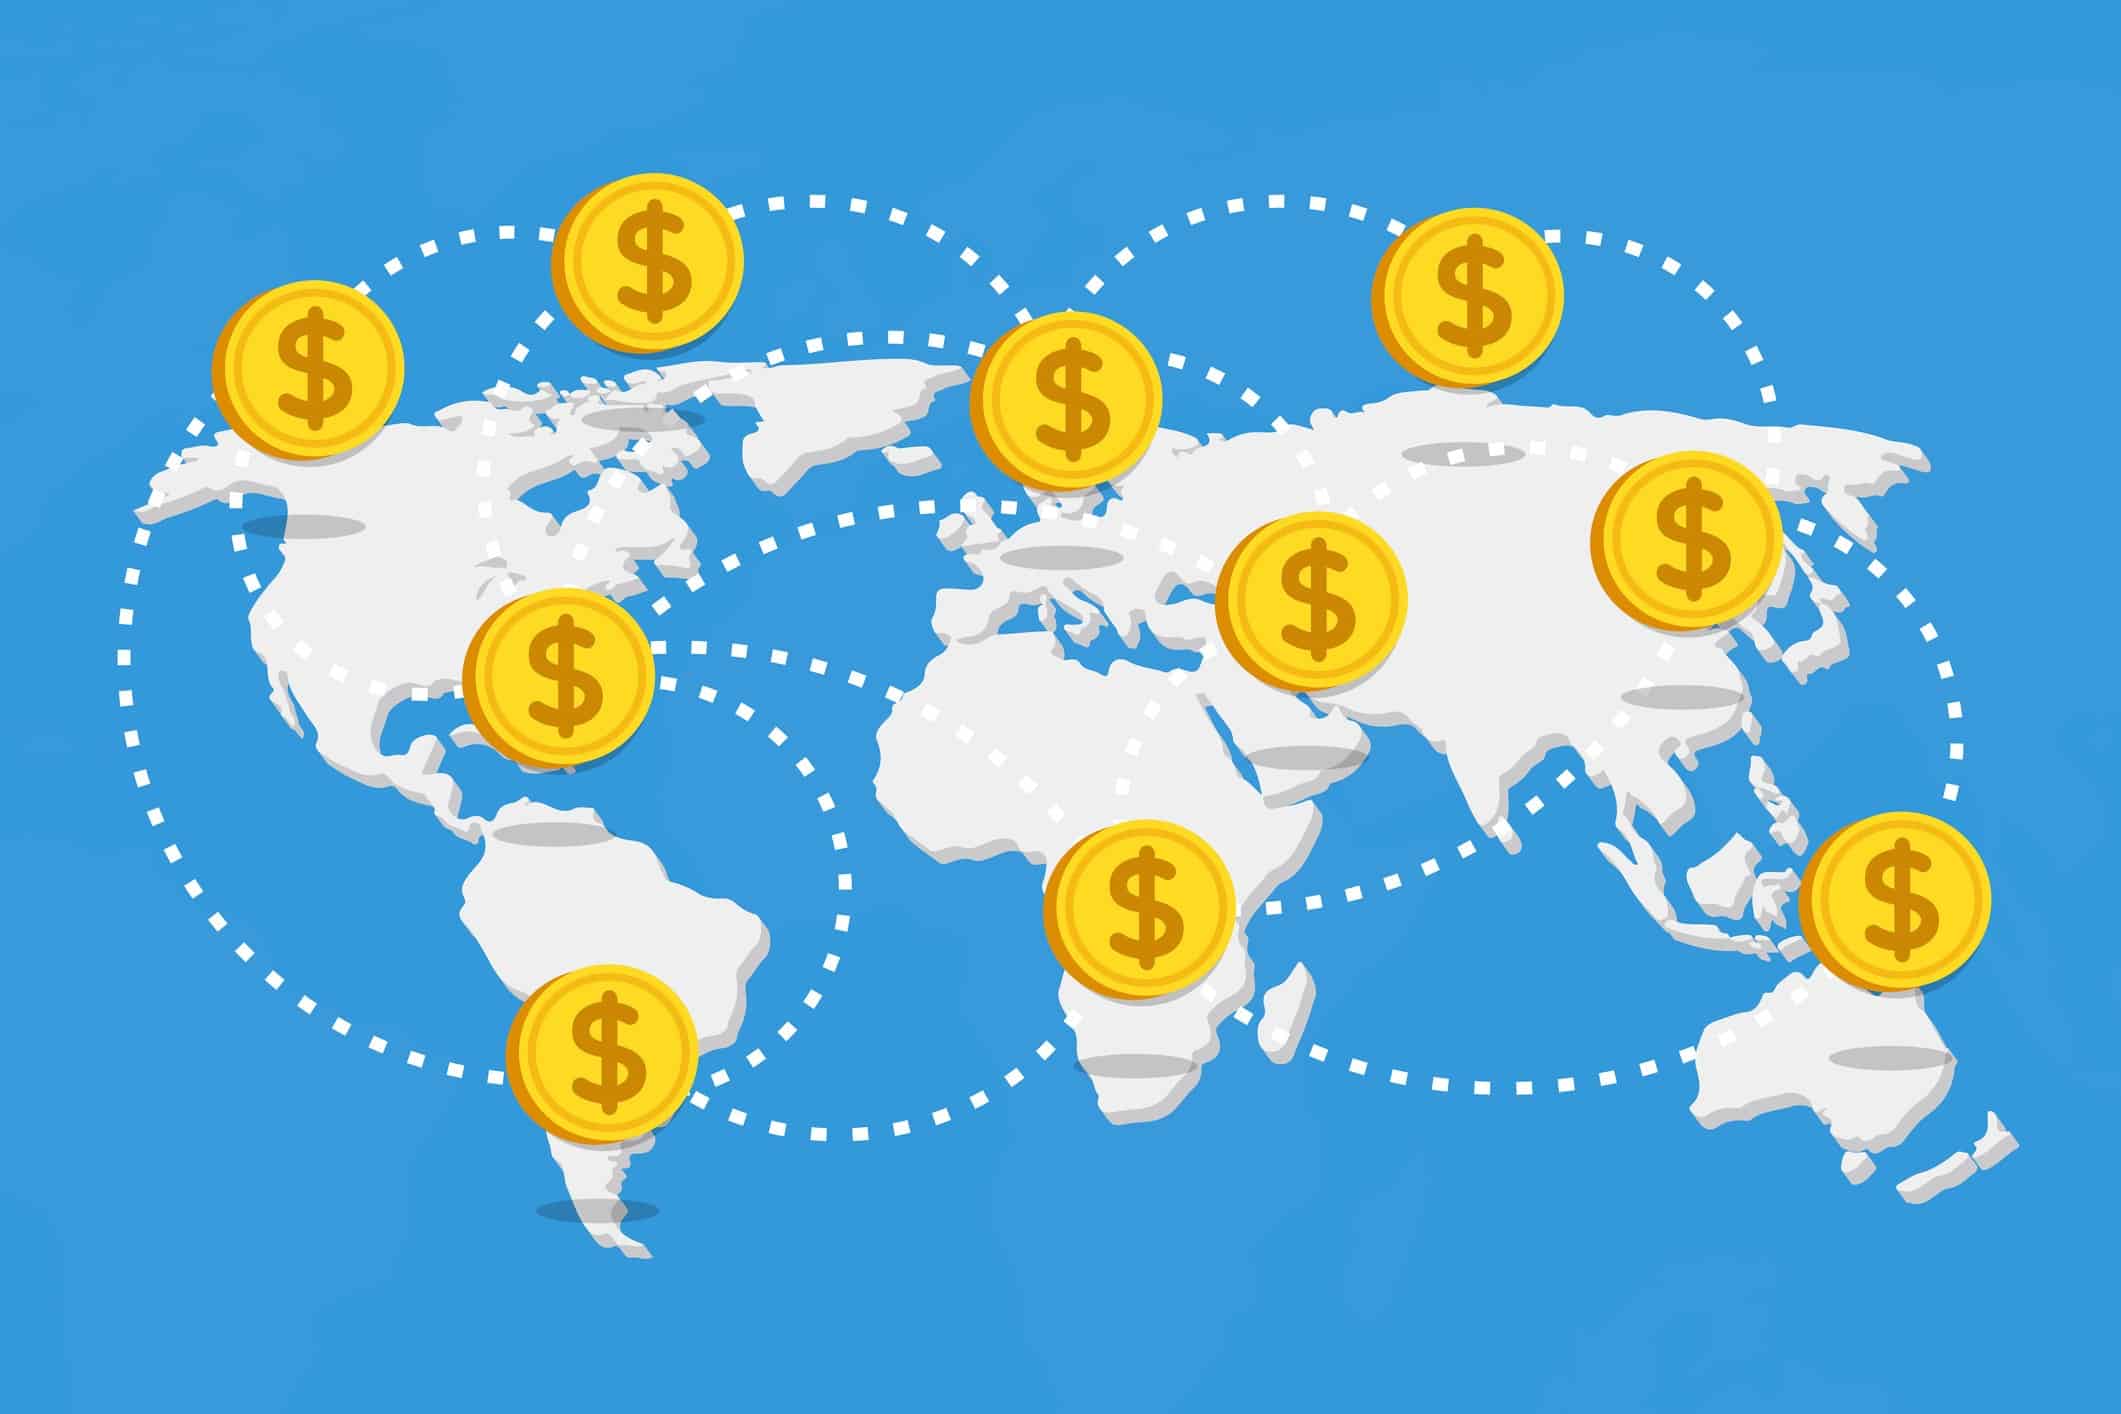 Dibujo de un mapamundi con grandes monedas que representan las economías emergentes